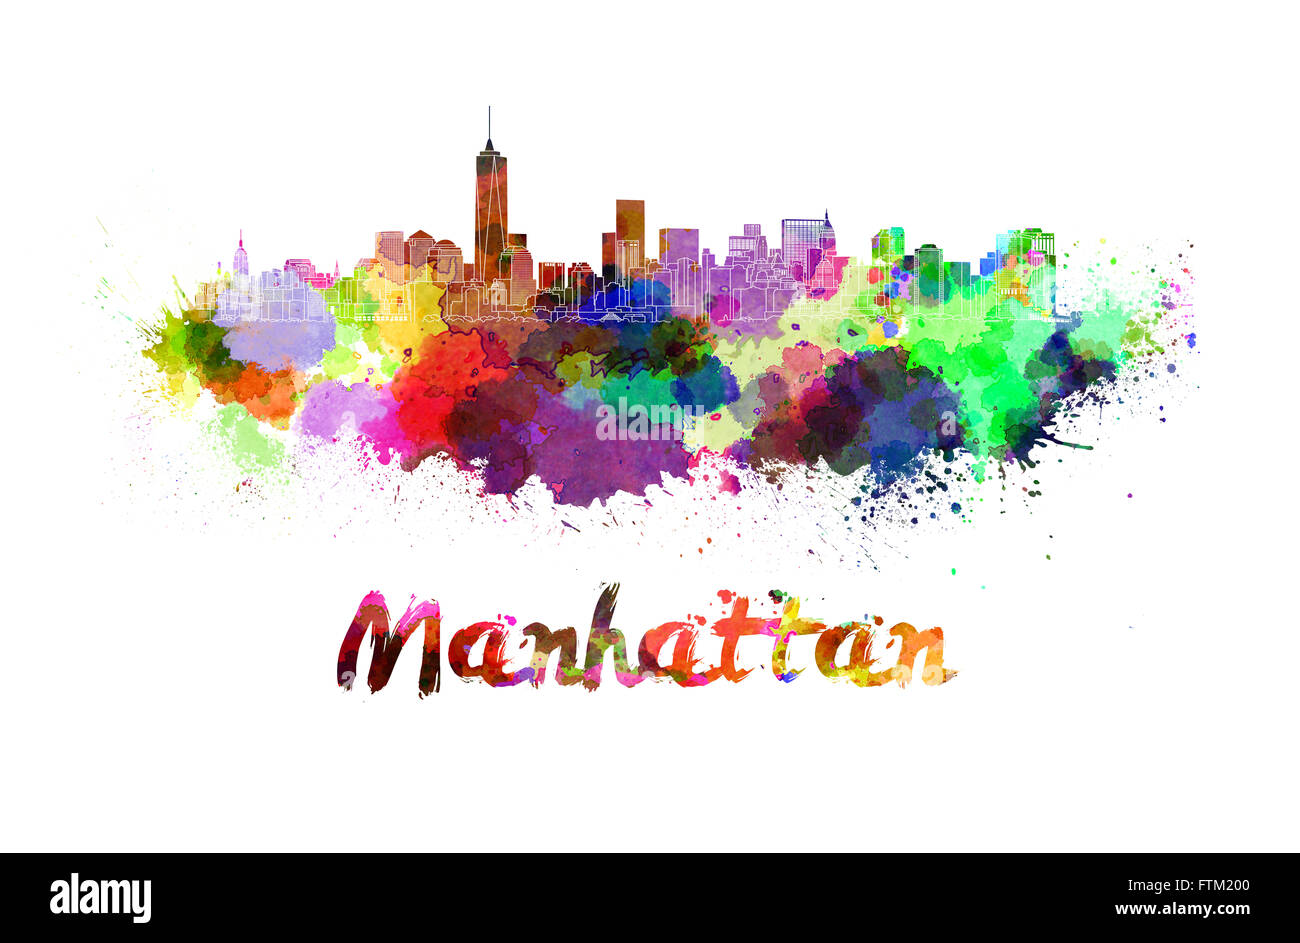 Manhattan skyline à l'aquarelle des éclaboussures avec clipping path Banque D'Images